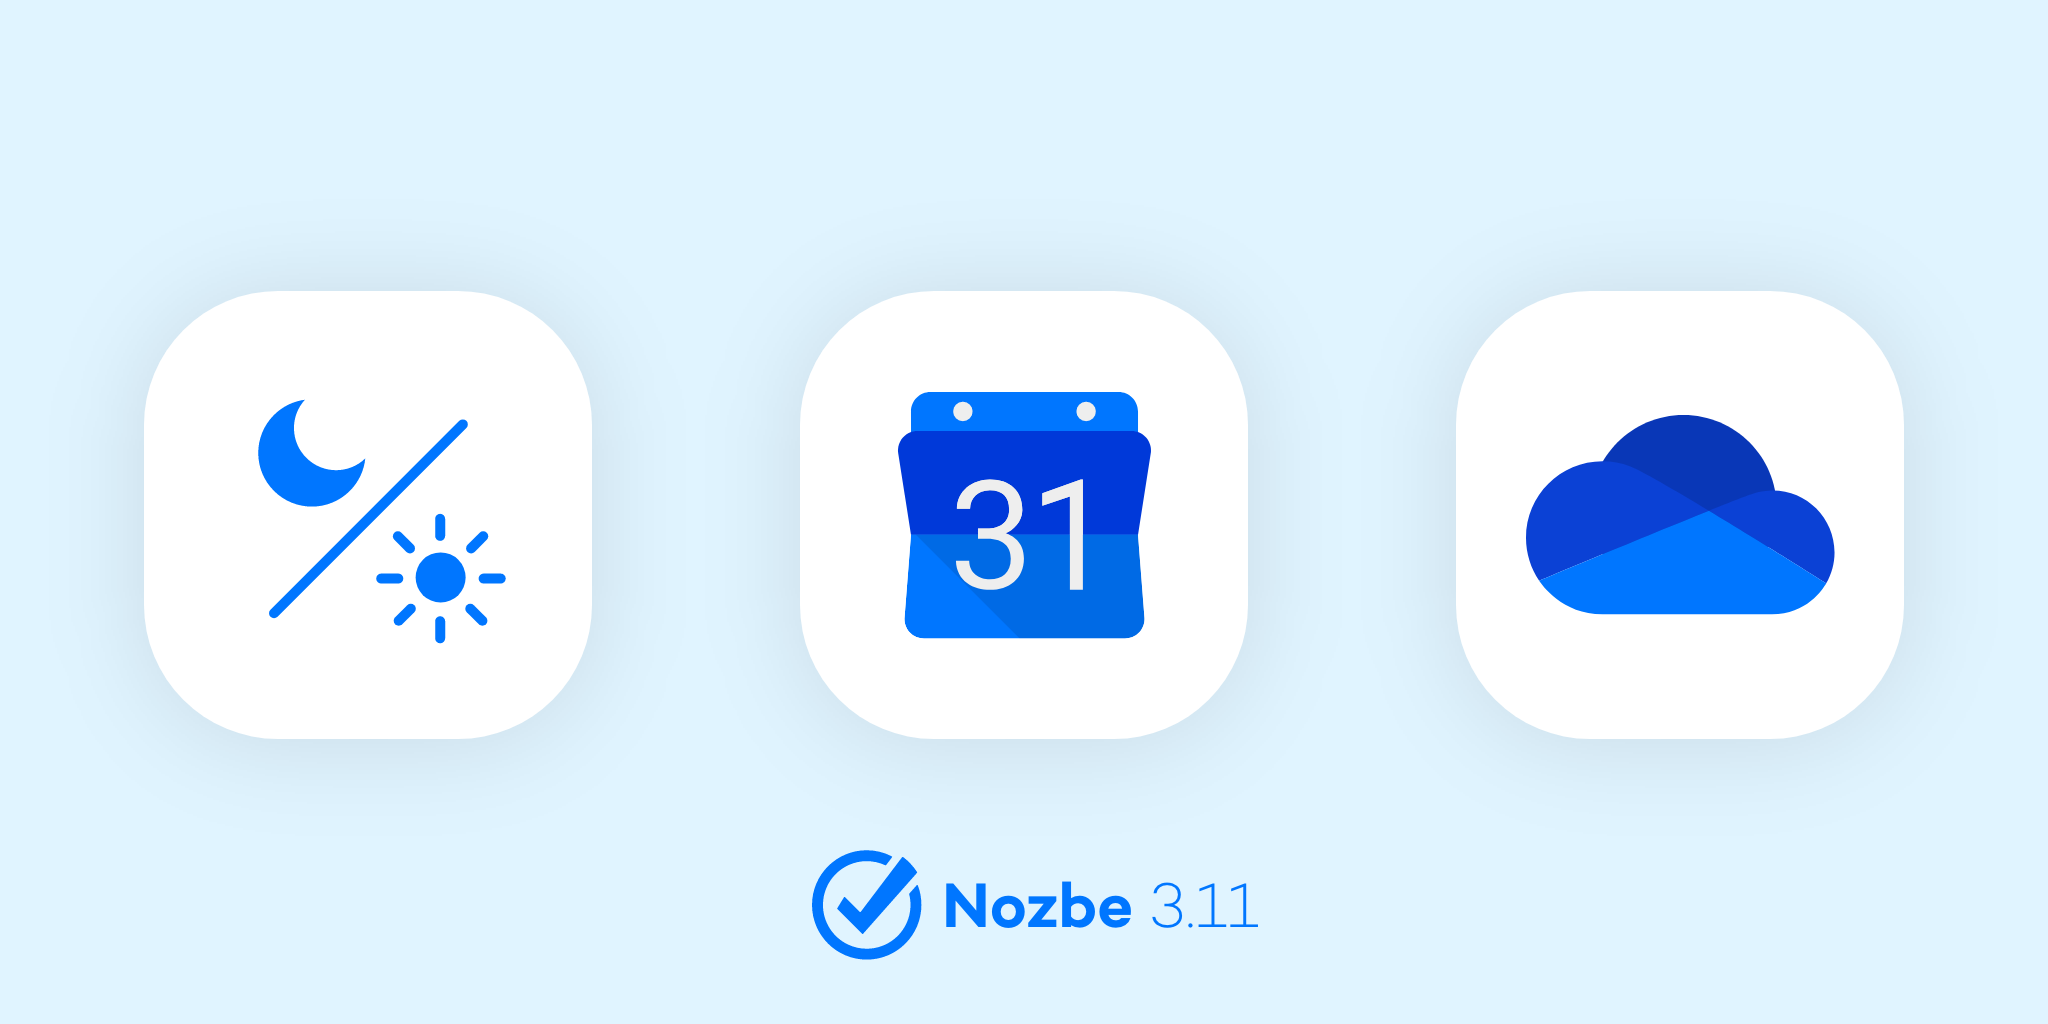 ¿Qué es lo nuevo que vas a encontrar en Nozbe - diciembre 2019?